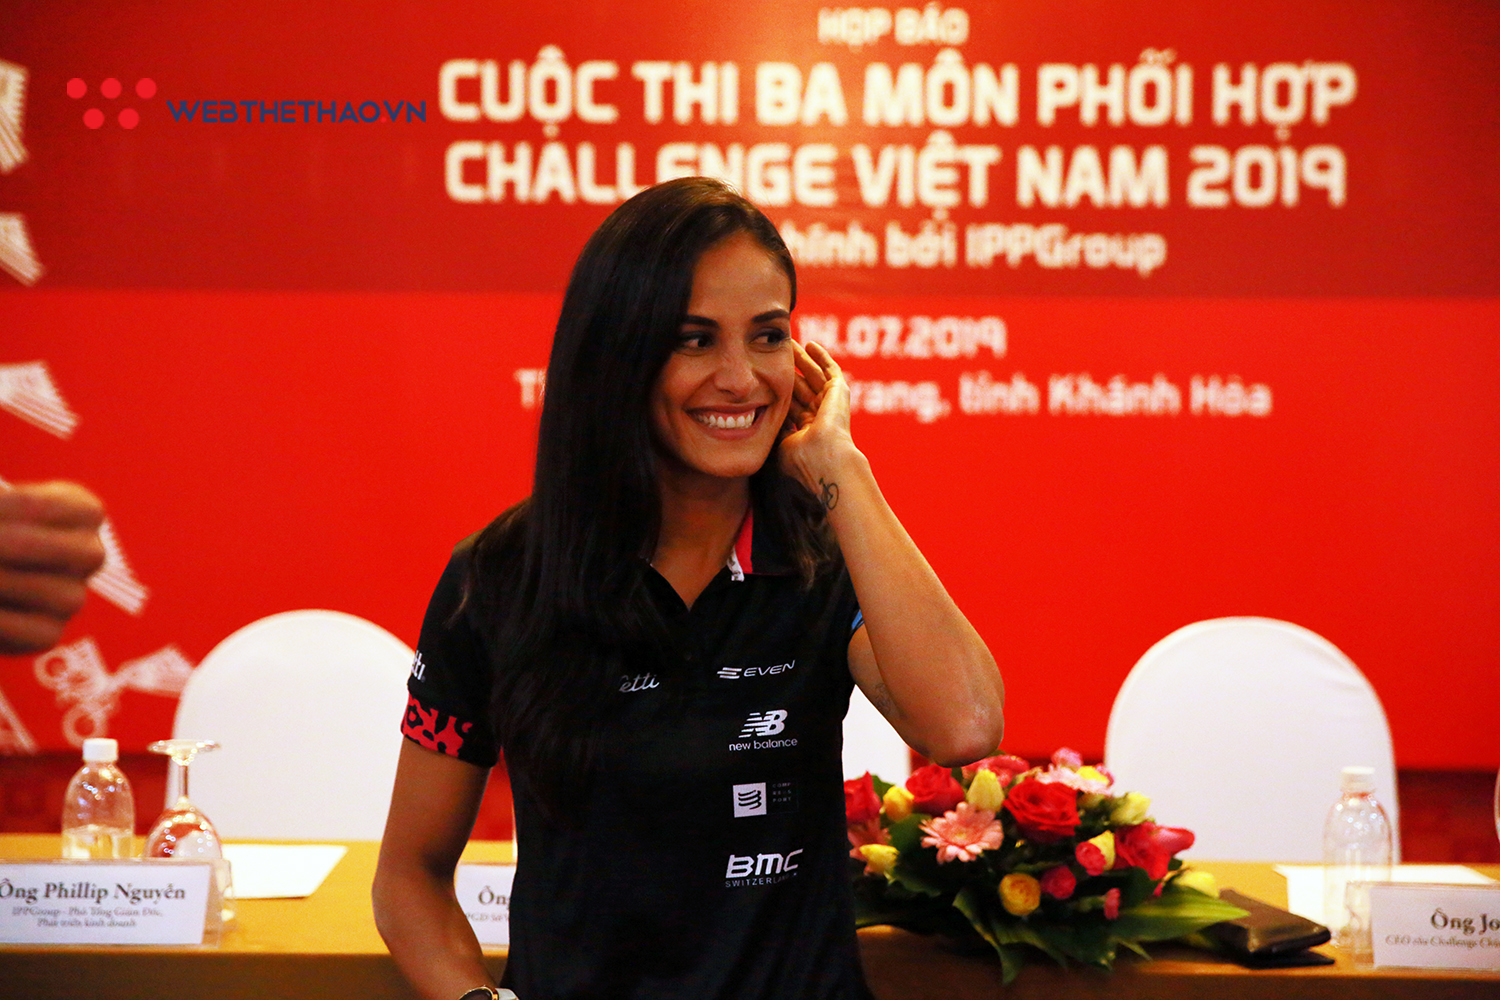 Hoa hậu Costa Rica ‘chiếm sóng’ ngày đầu nhận race-kit Challenge Vietnam 2019